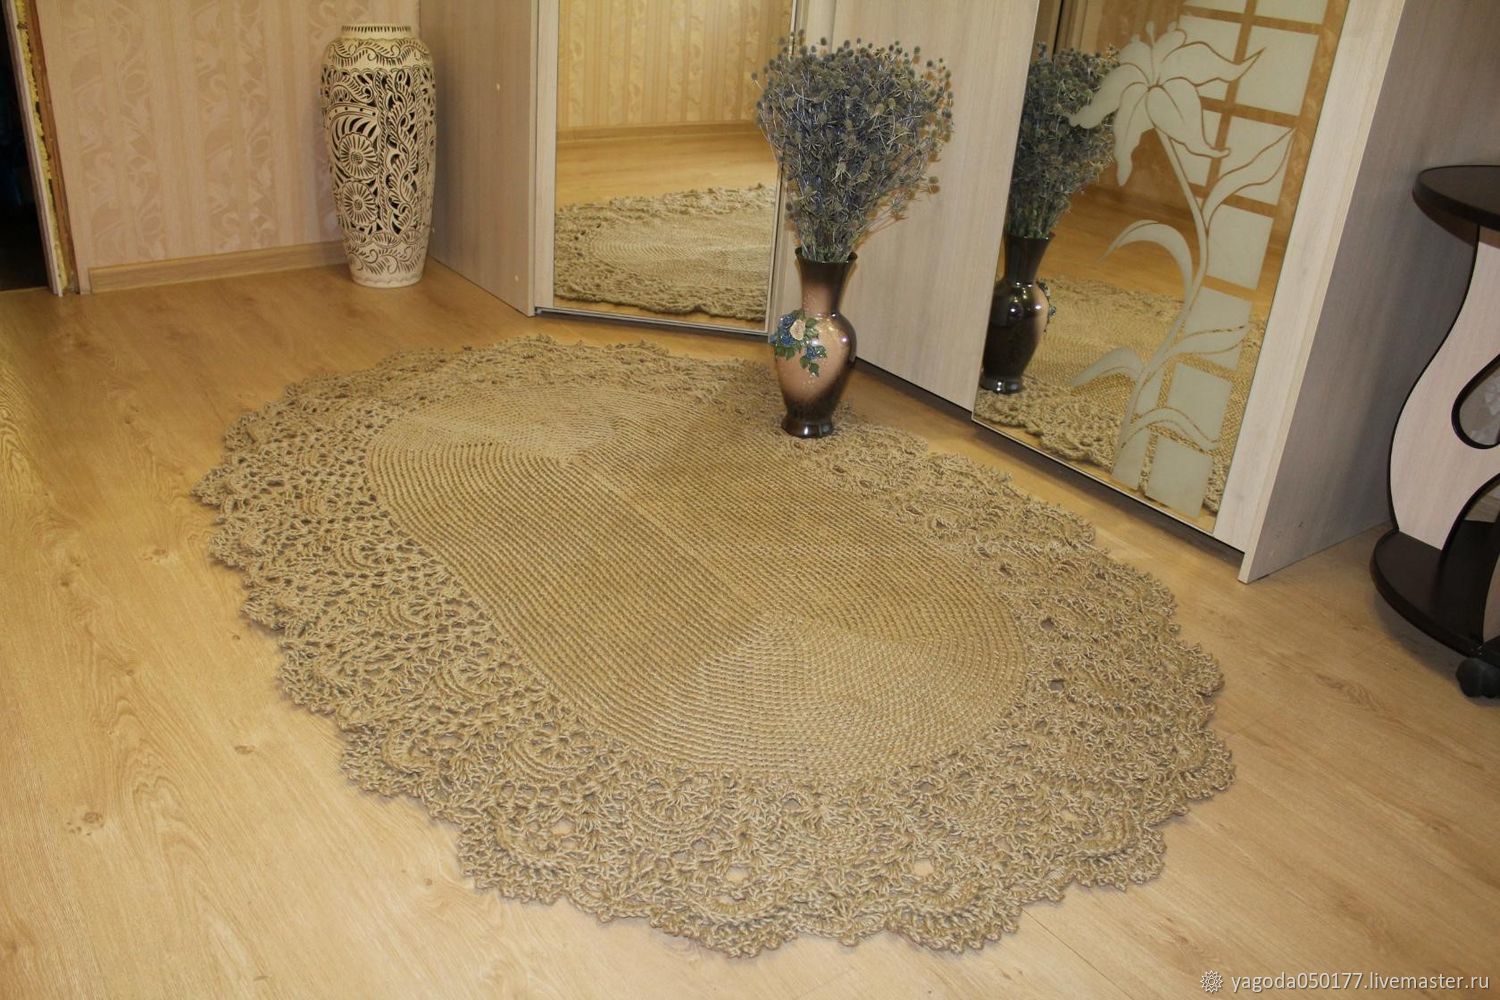 Carpet jute 'Oval'', Carpets, Kaluga,  Фото №1